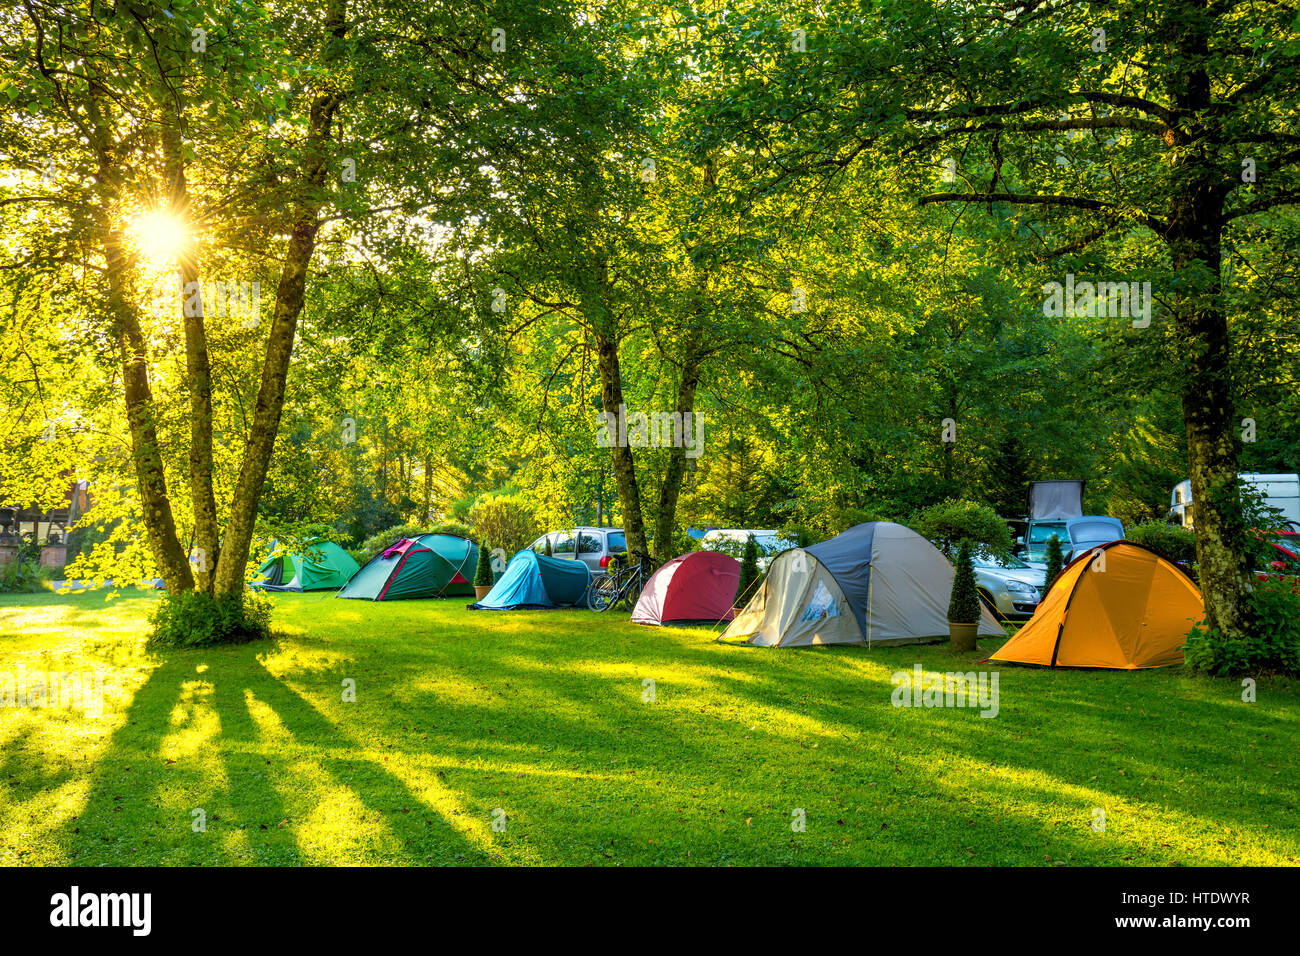 Zelten Camping Bereich, am frühen Morgen mit Sonnenschein, schönen Naturplatz mit großen Bäumen und grünen Rasen, Europa Stockfoto